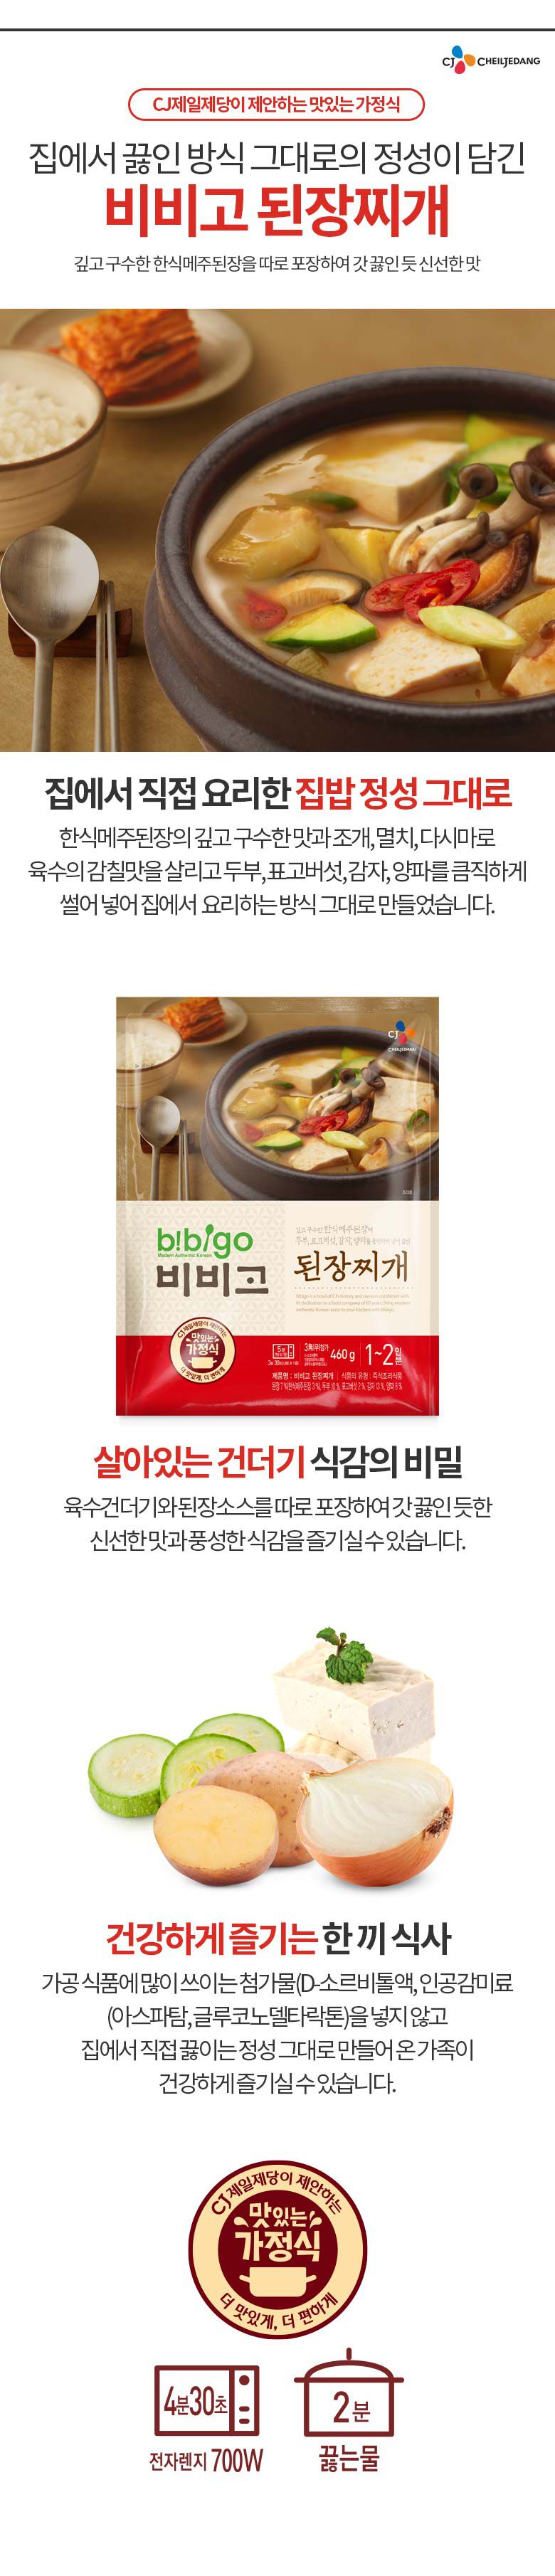 韓國食品-[CJ] Bibigo 大醬湯 460g (no.7)